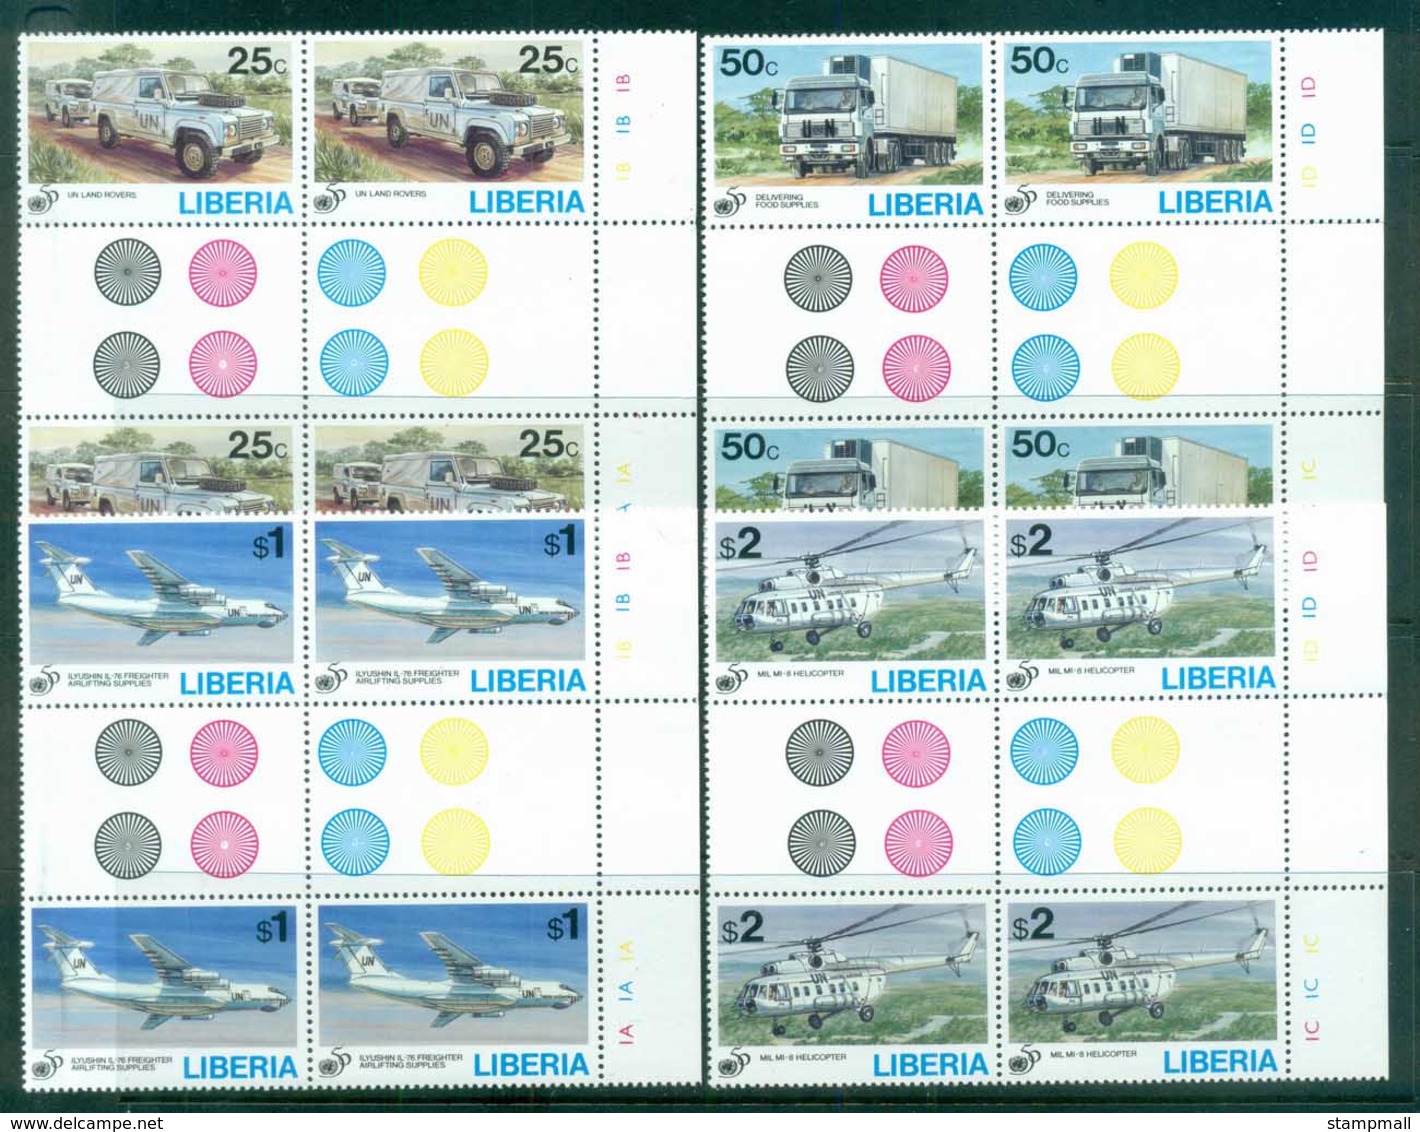 Liberia 1995 UN 50th Anniv. Gutter Blk 4 MUH - Liberia